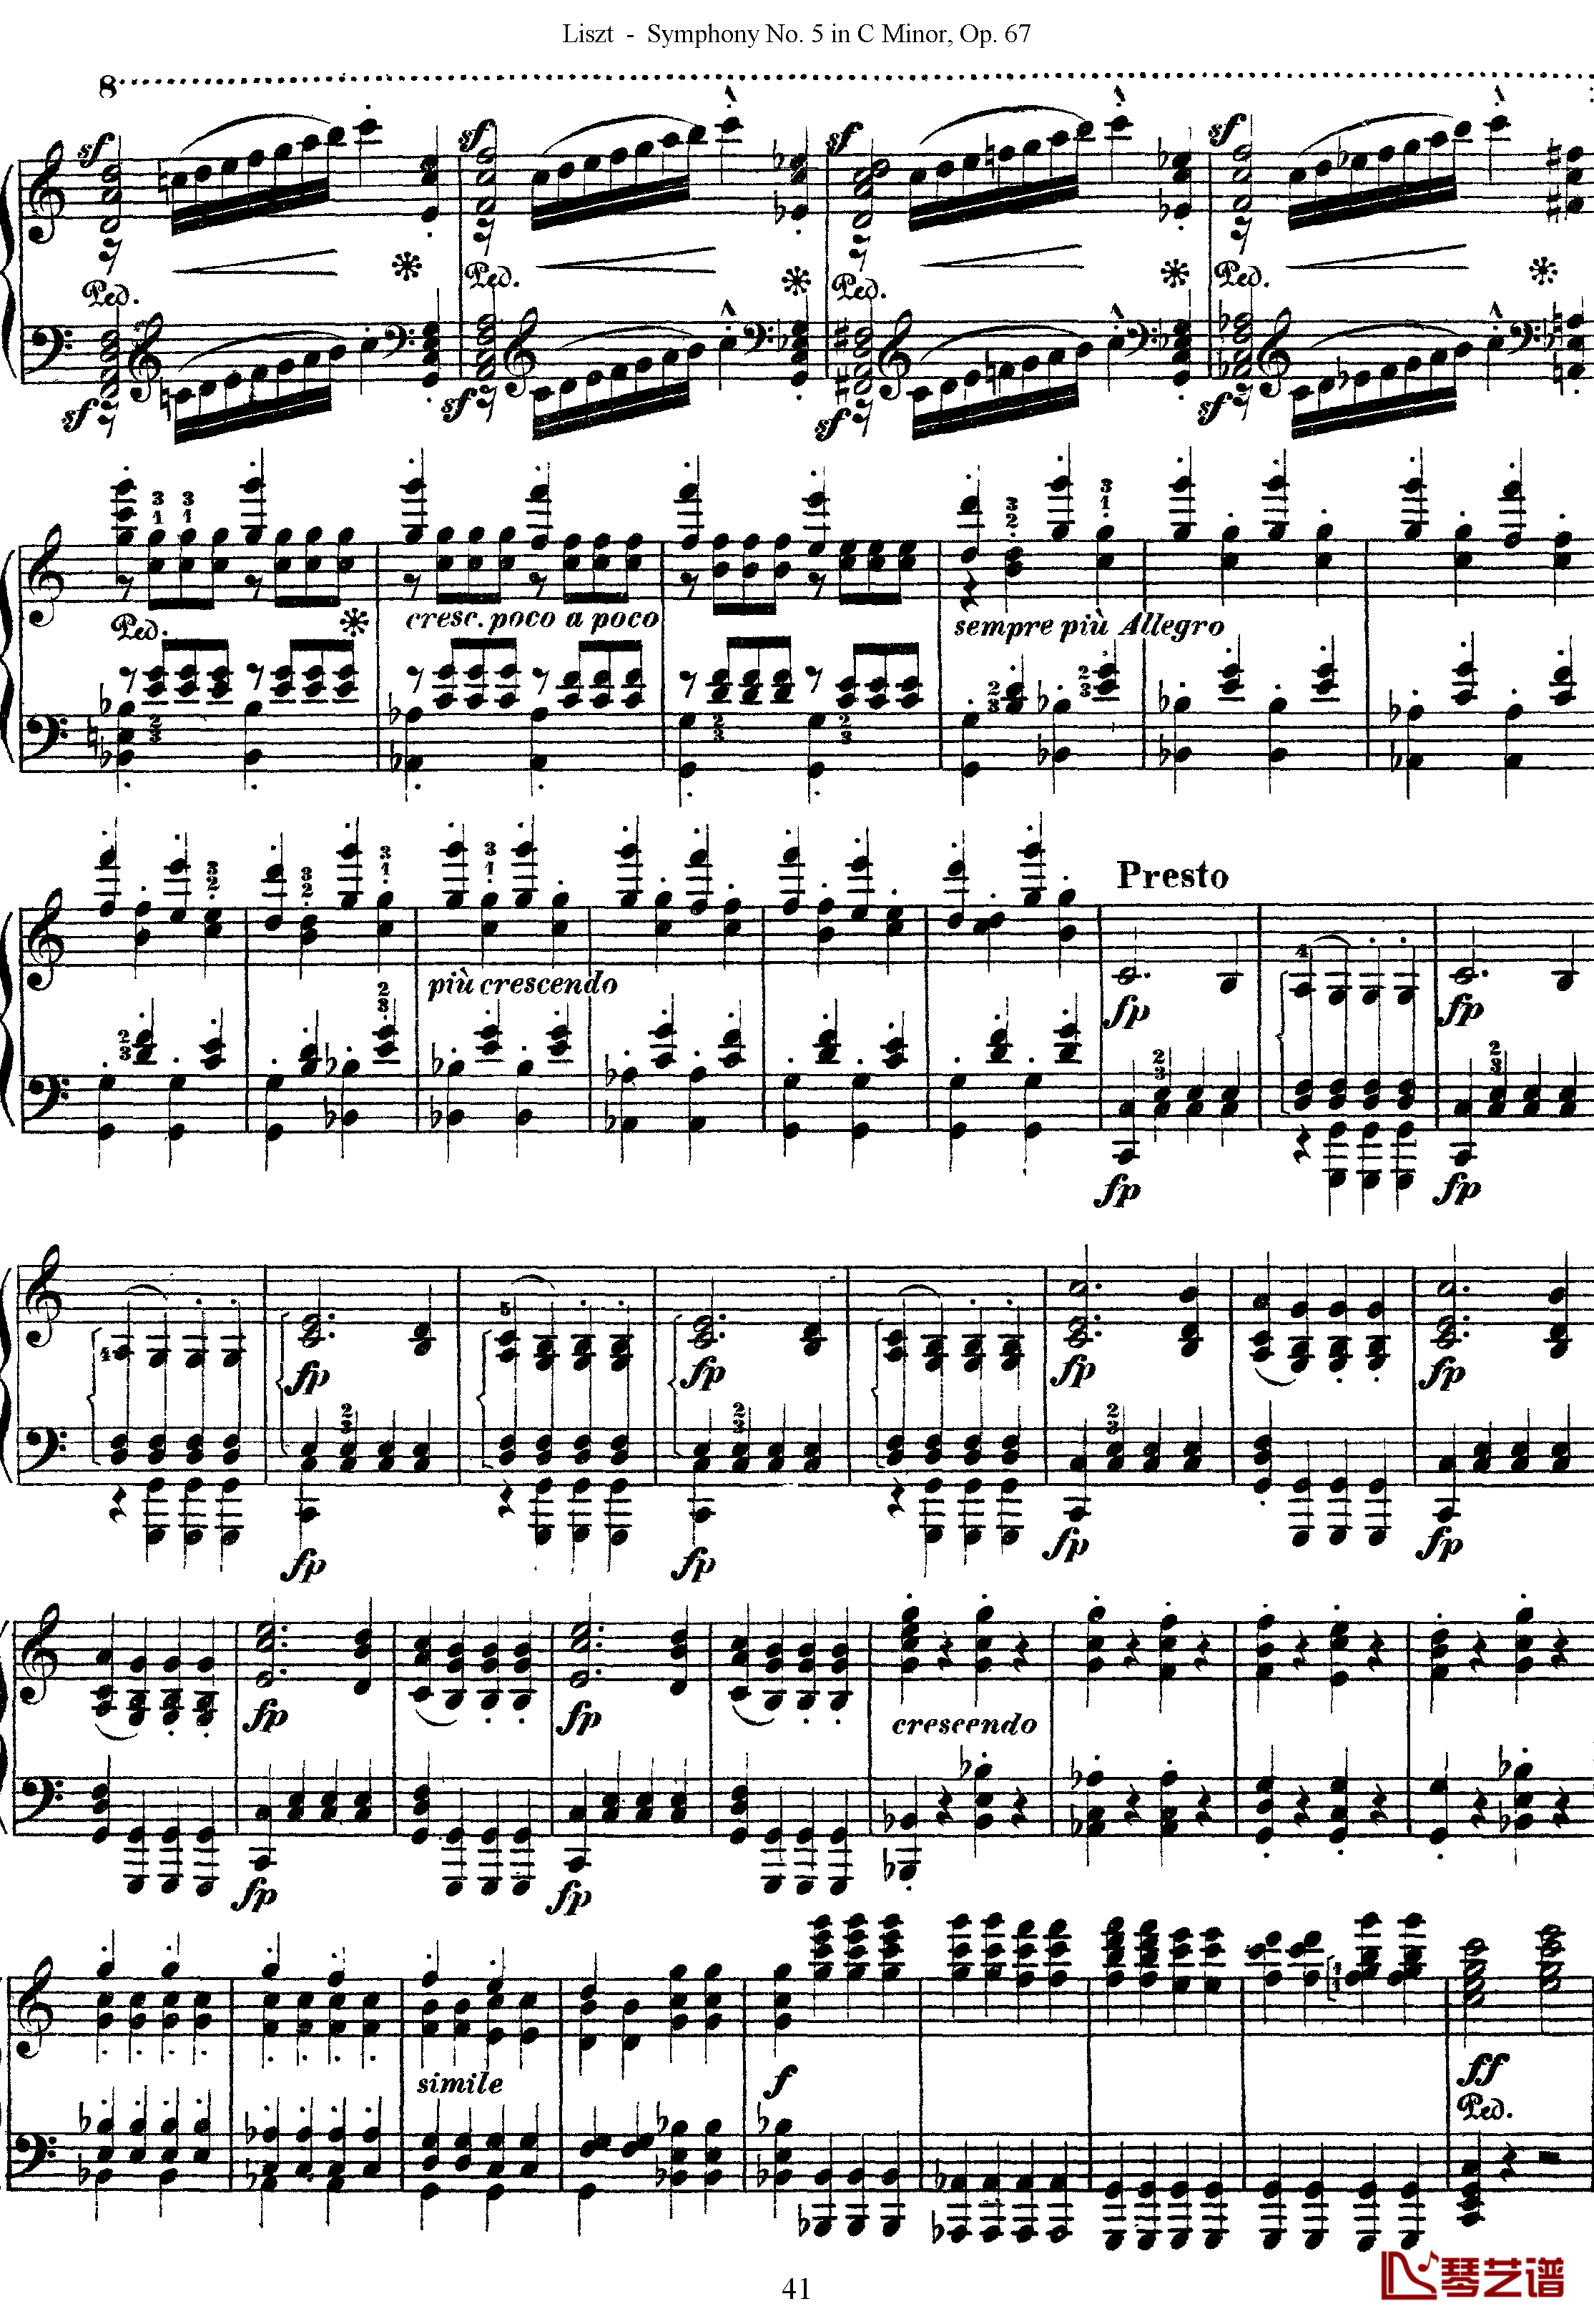 第五交响乐的钢琴曲钢琴谱-李斯特-李斯特改编自贝多芬41